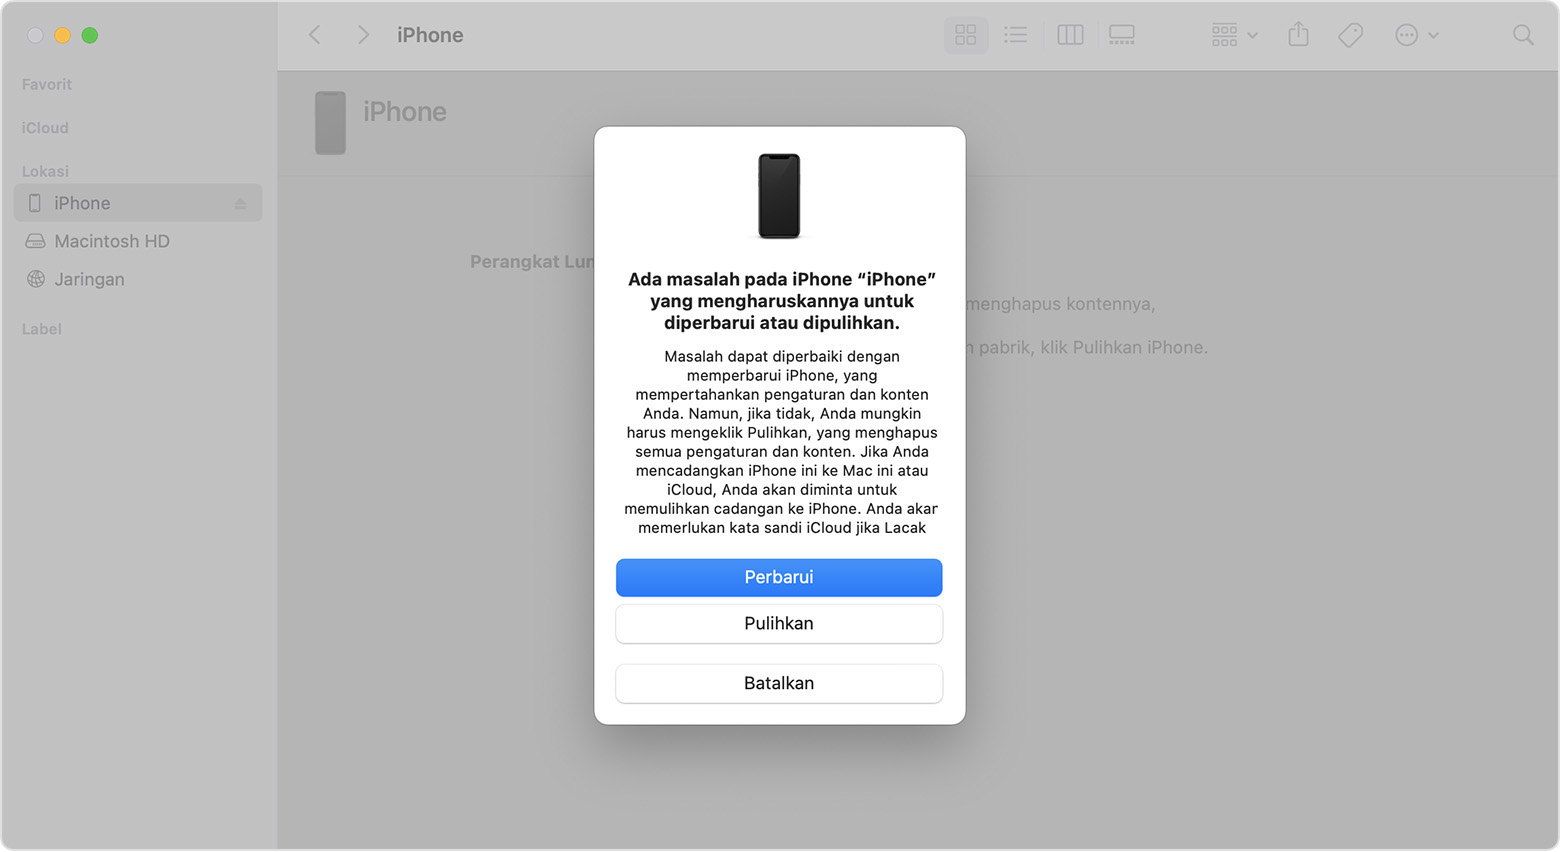 Jendela Finder di Mac menampilkan pilihan untuk memulihkan atau memperbarui iPhone